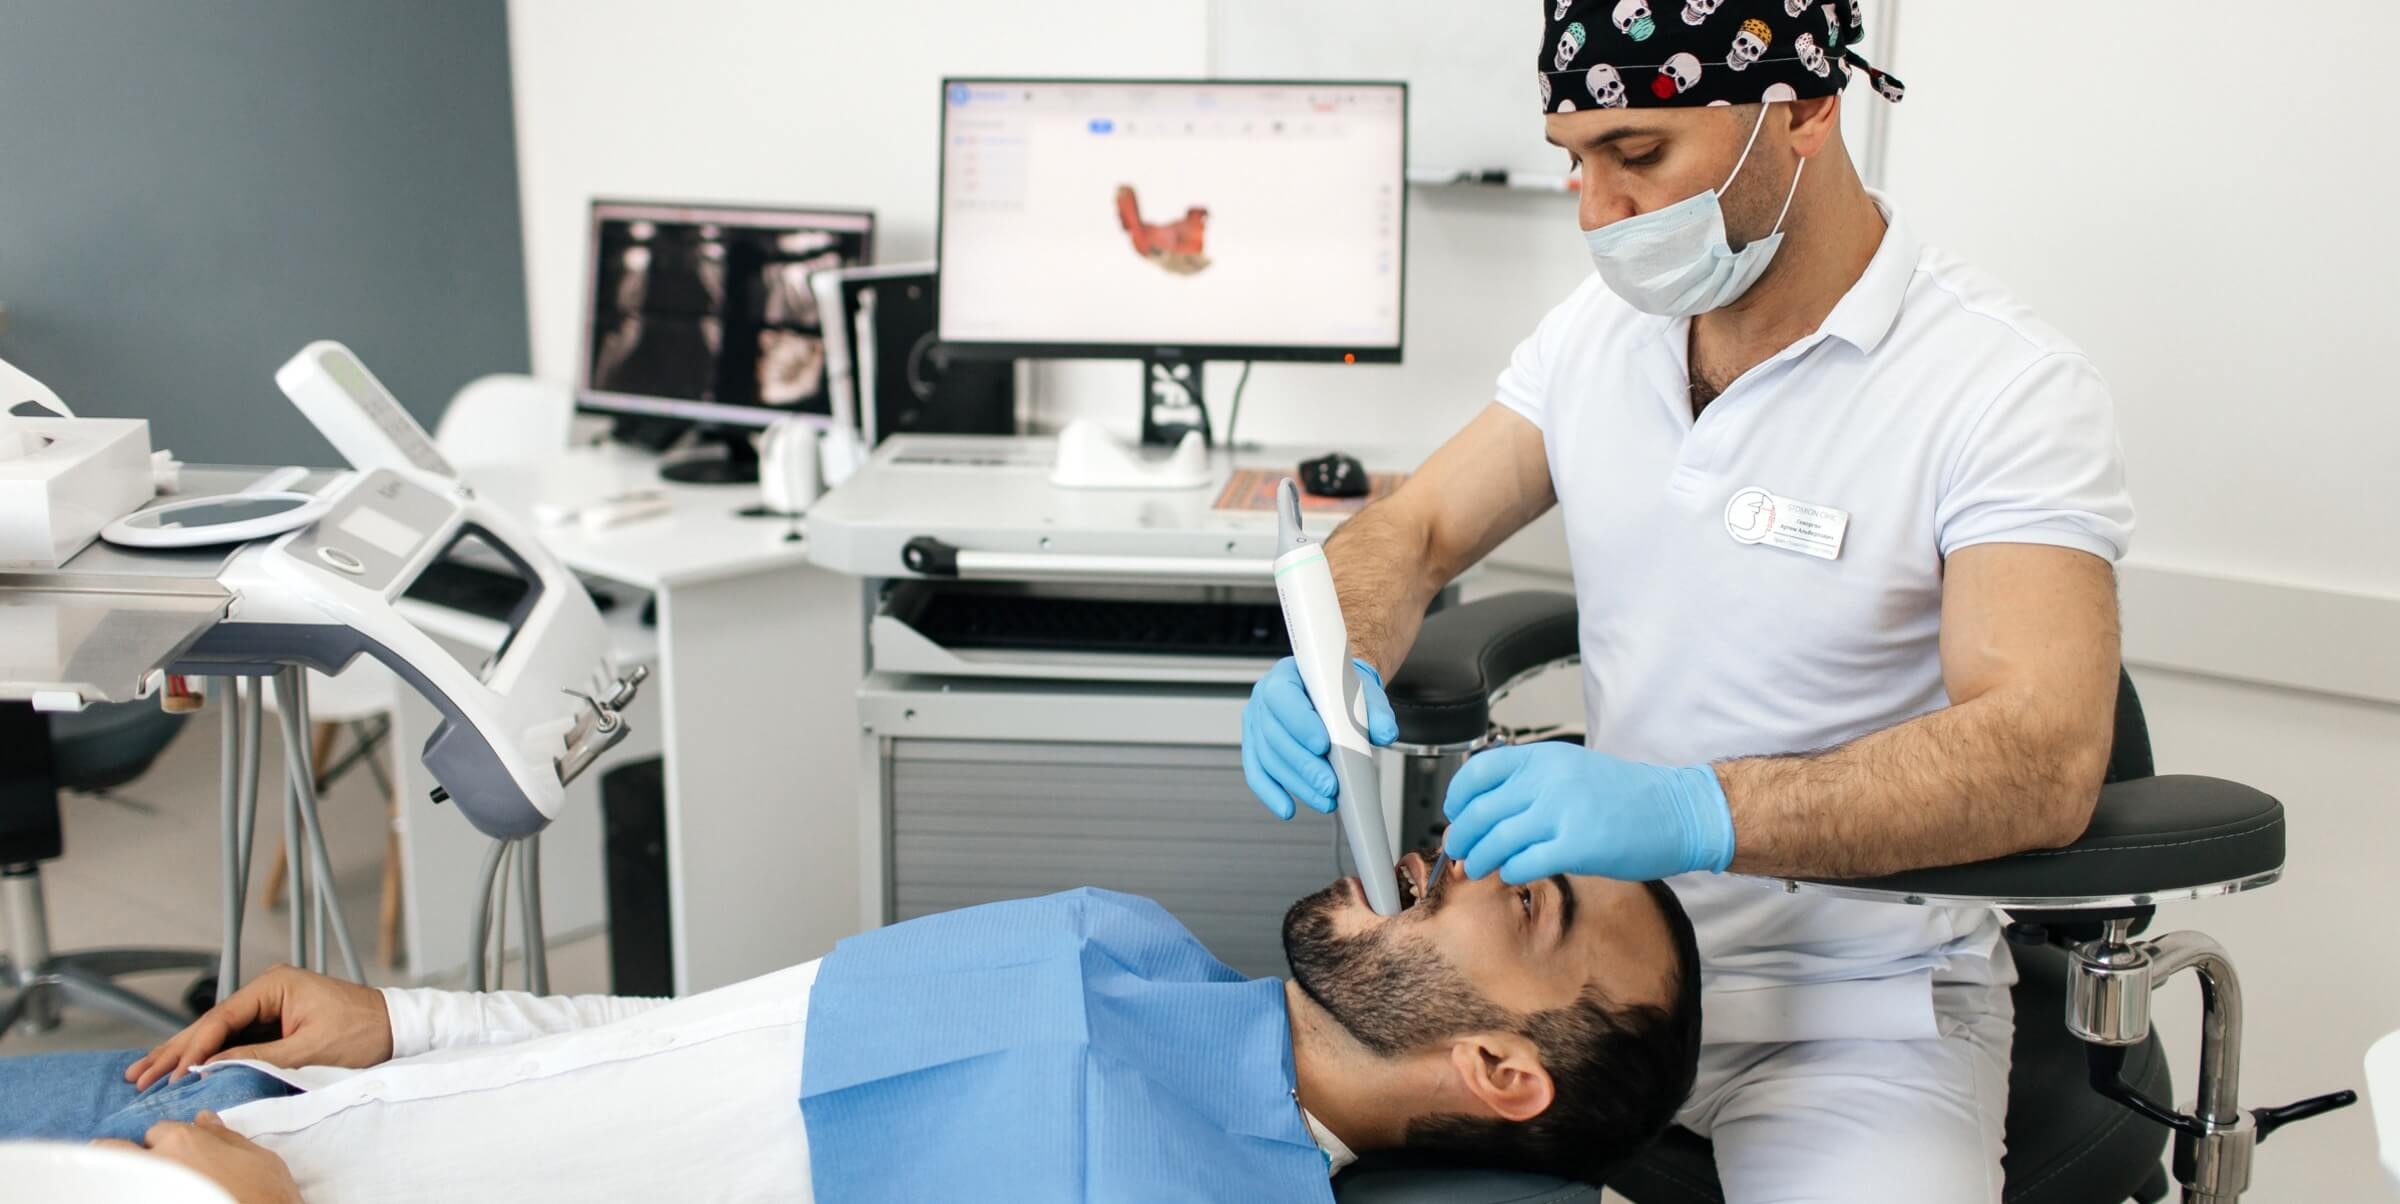 Стоматолог ортопед использует технологии цифровой стоматологии для эстетического протезирования зубов